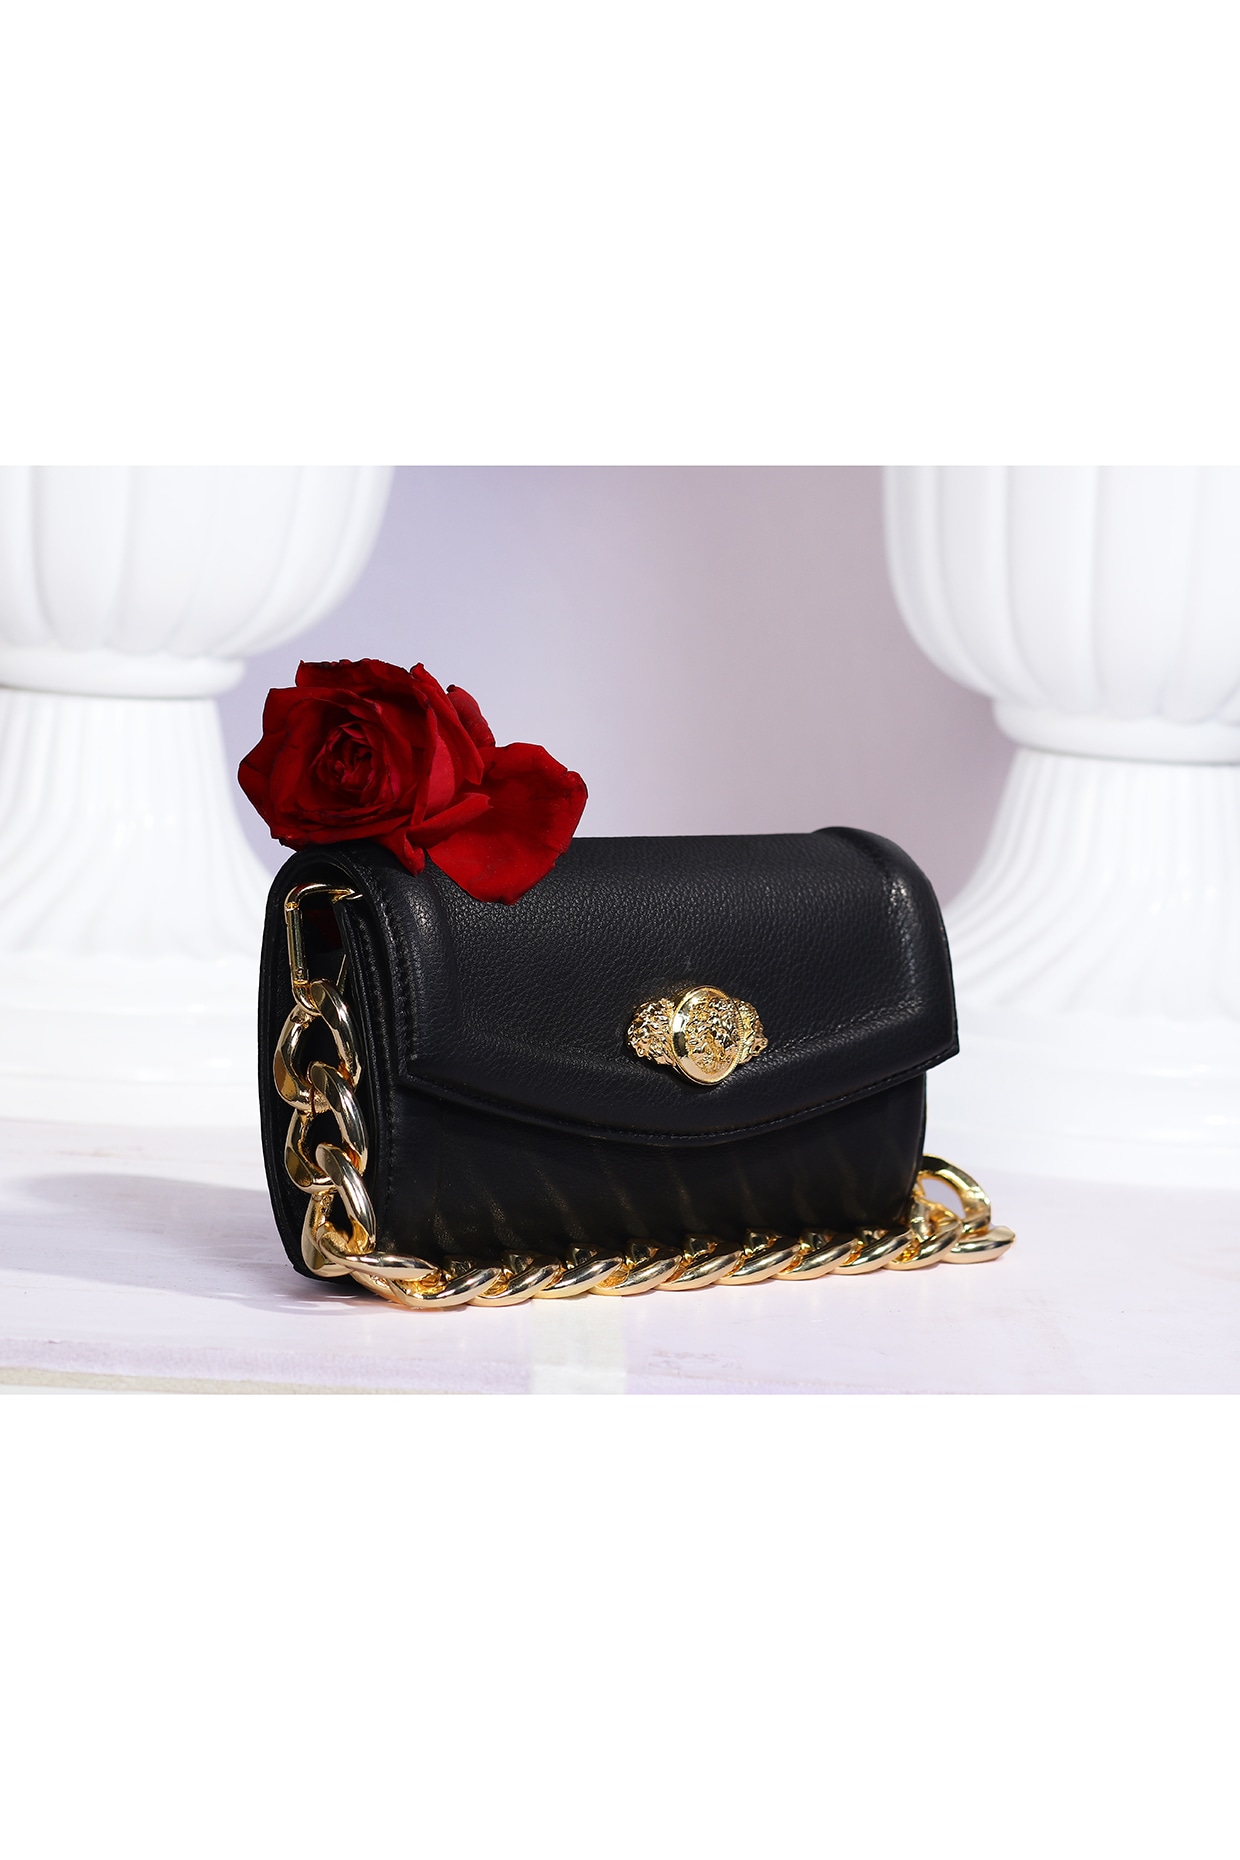 Buy Pink Bargur Handbag by Designer THE GARNISH COMPANY Online at Ogaan.com